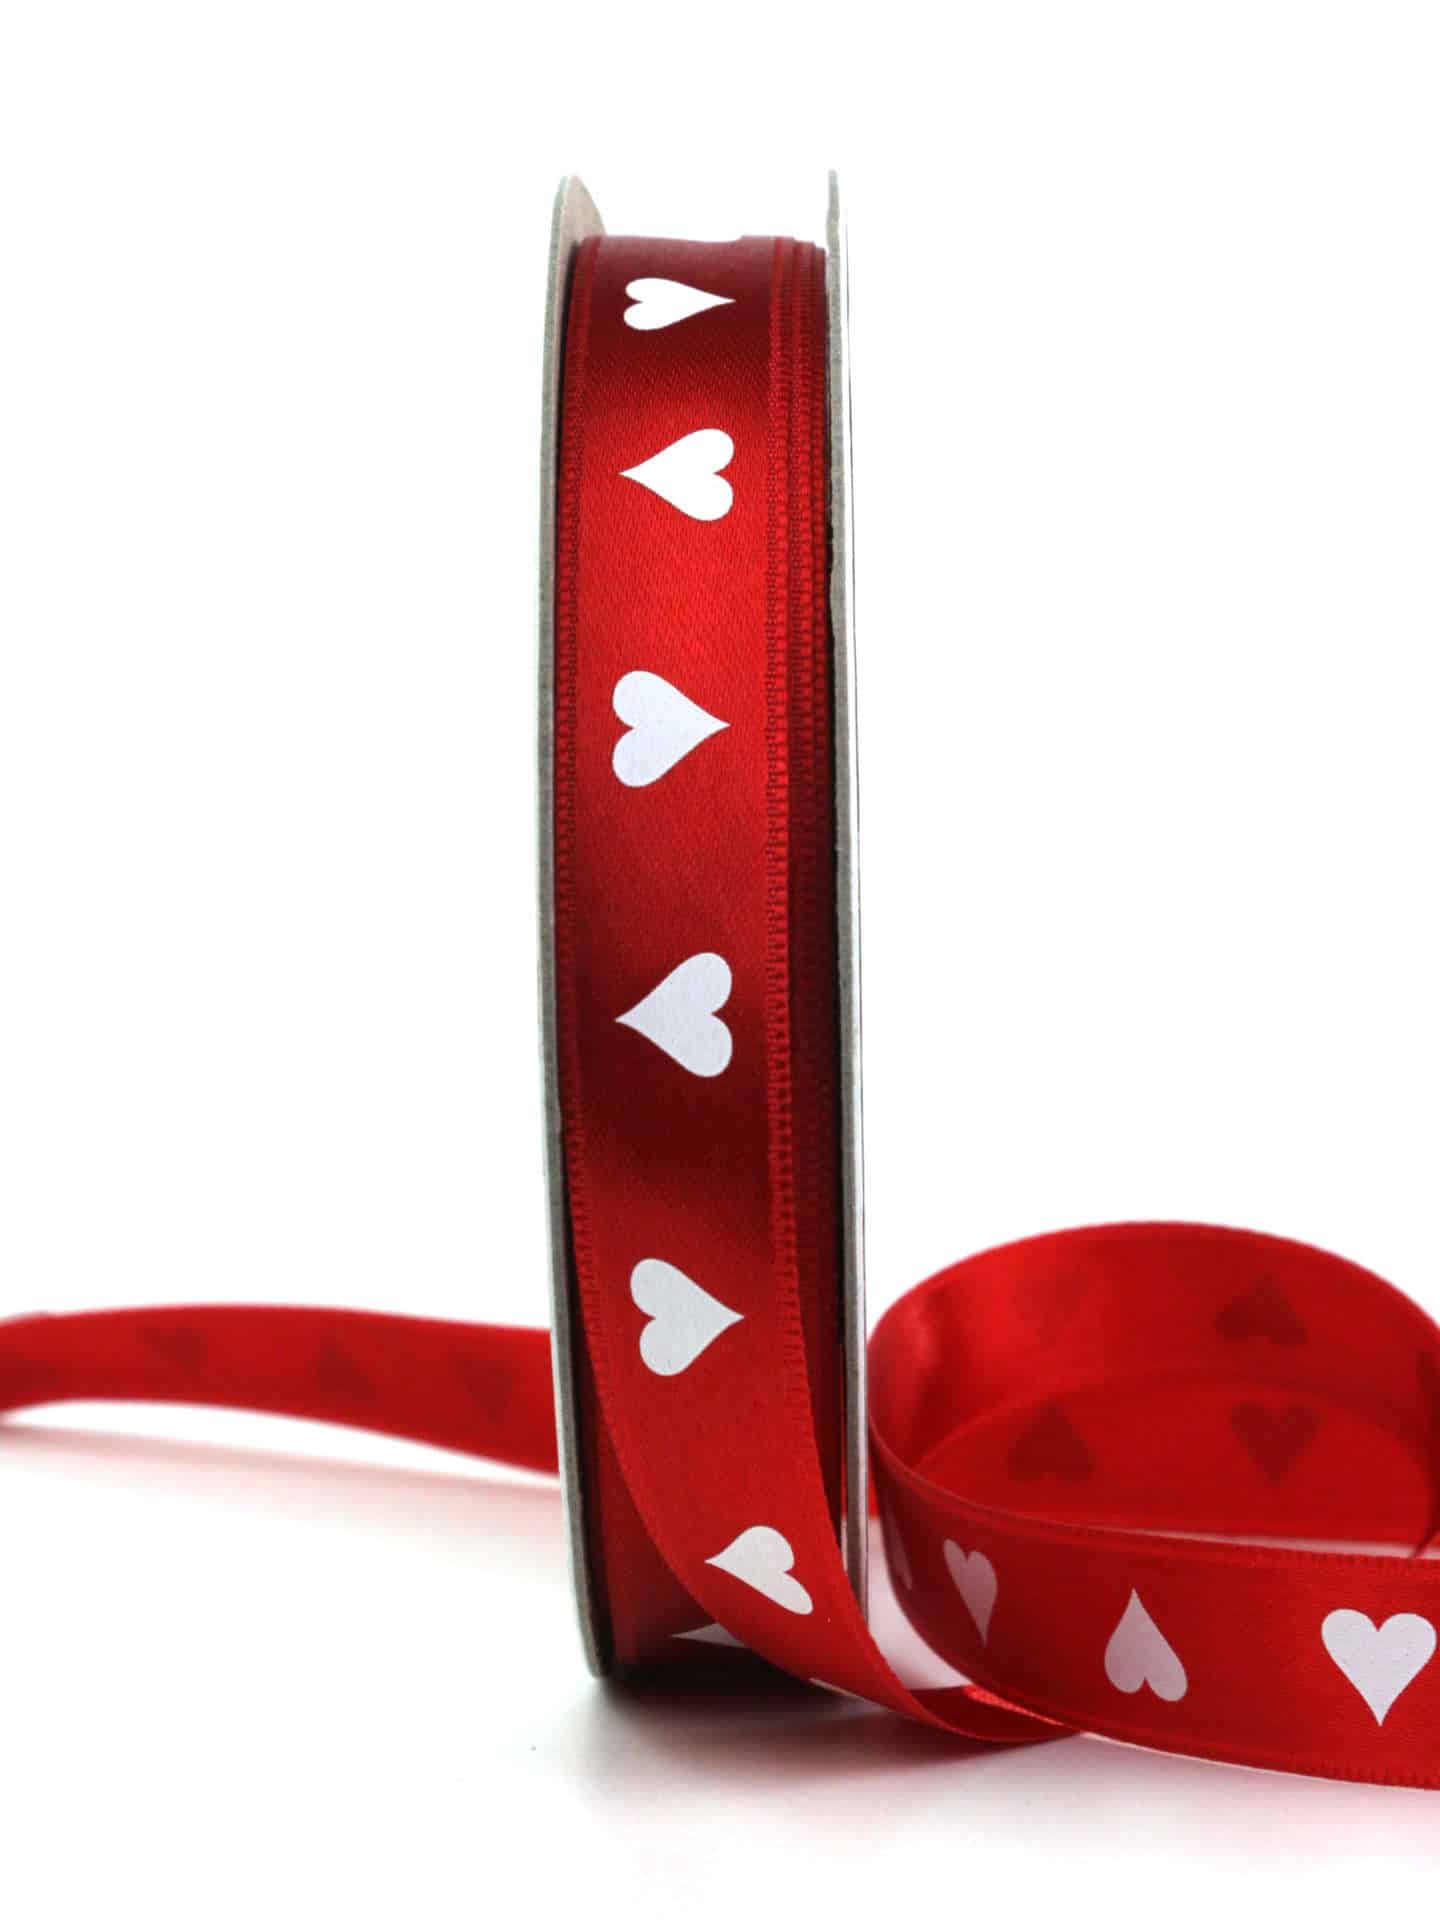 Geschenkband mit Herzen, rot, 15 mm breit - muttertag, anlasse, valentinstag, geschenkband, geschenkband-gemustert, geschenkband-mit-herzen, geschenkband-fuer-anlaesse